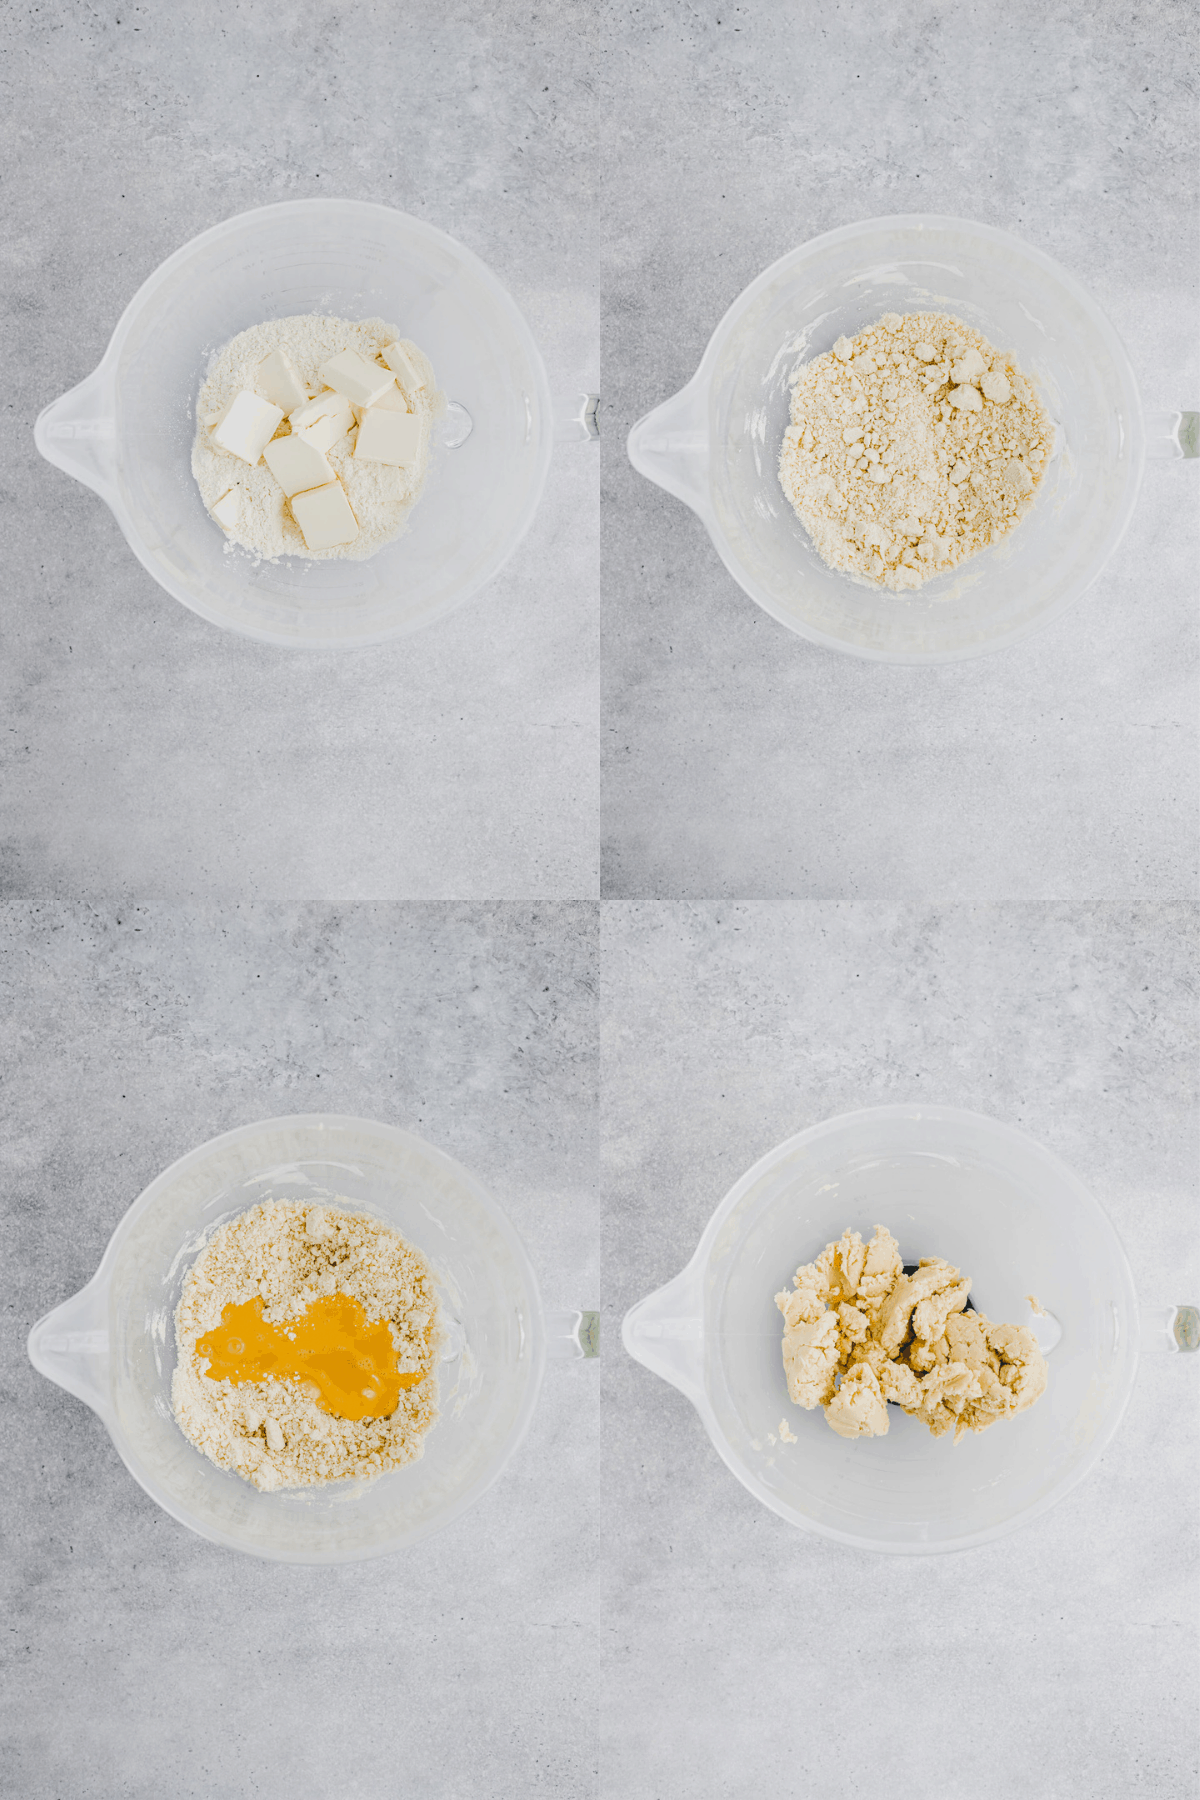 Homemade Quiche Crust Recipe Step 1-4